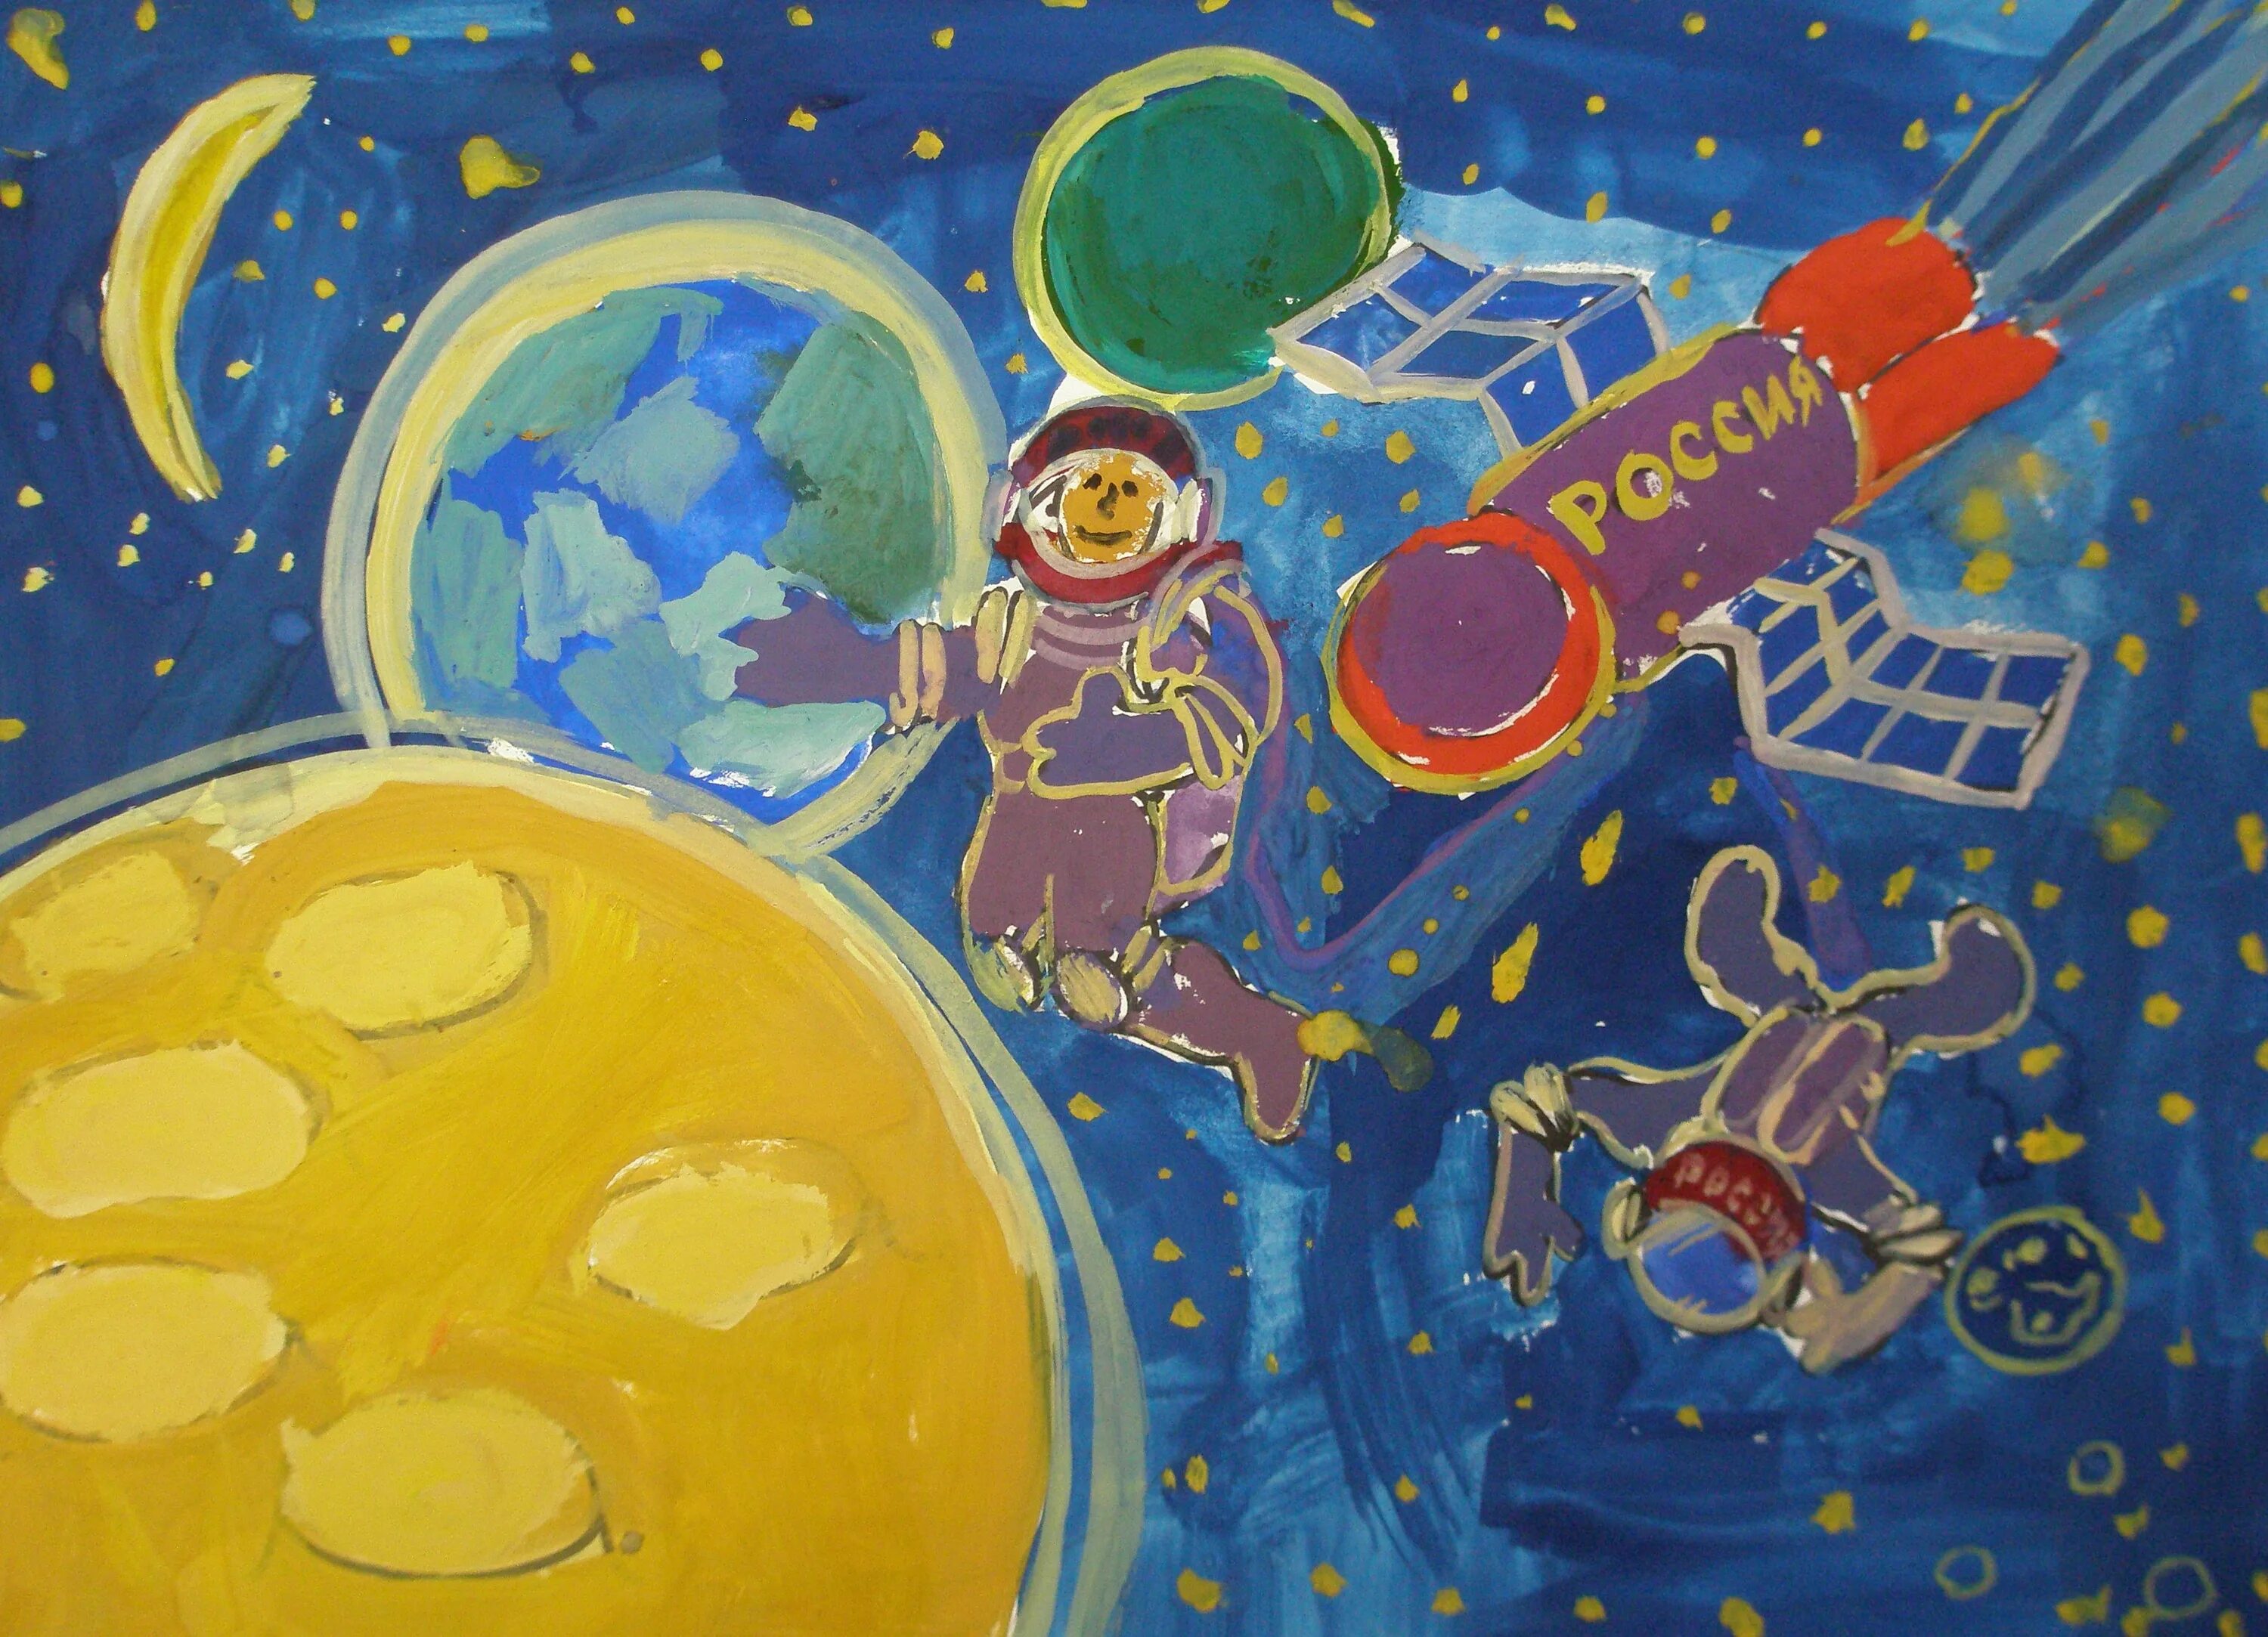 Мир космоса рисунок. Рисунок на космическую тему. Космос глазами детей рисунки конкурс. Тема космос. Детские рисунки про космос.